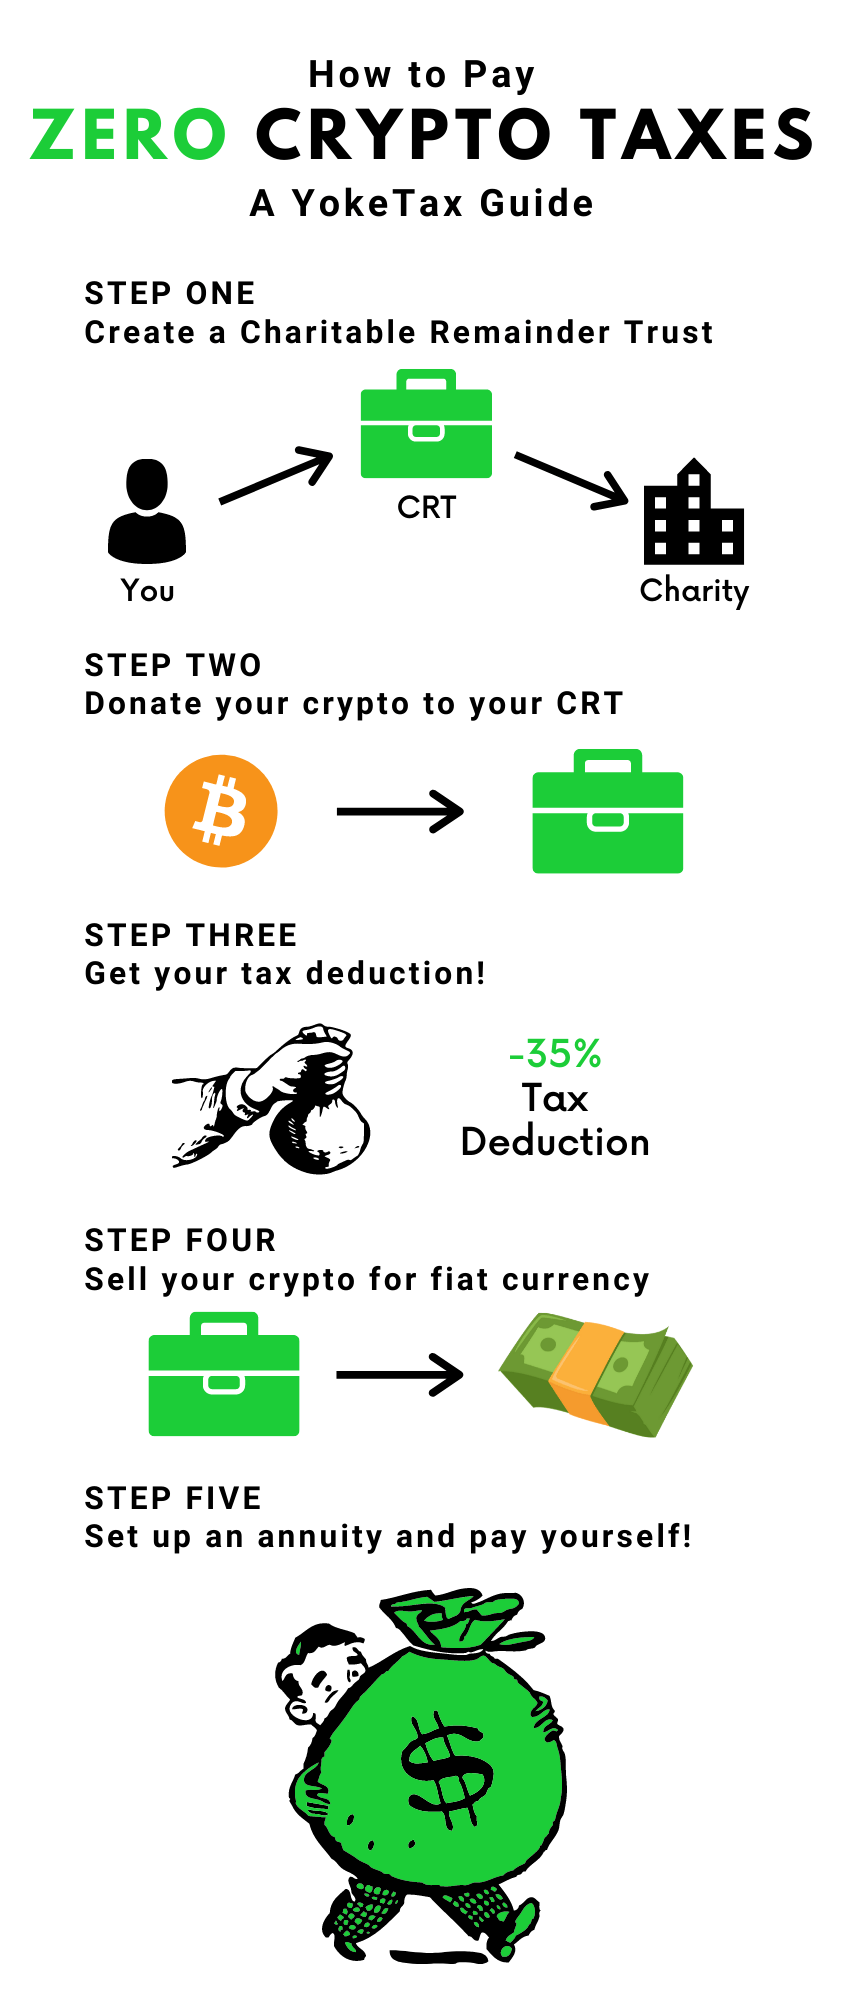 How to pay zero crypto taxes - yoke tax guide 2021